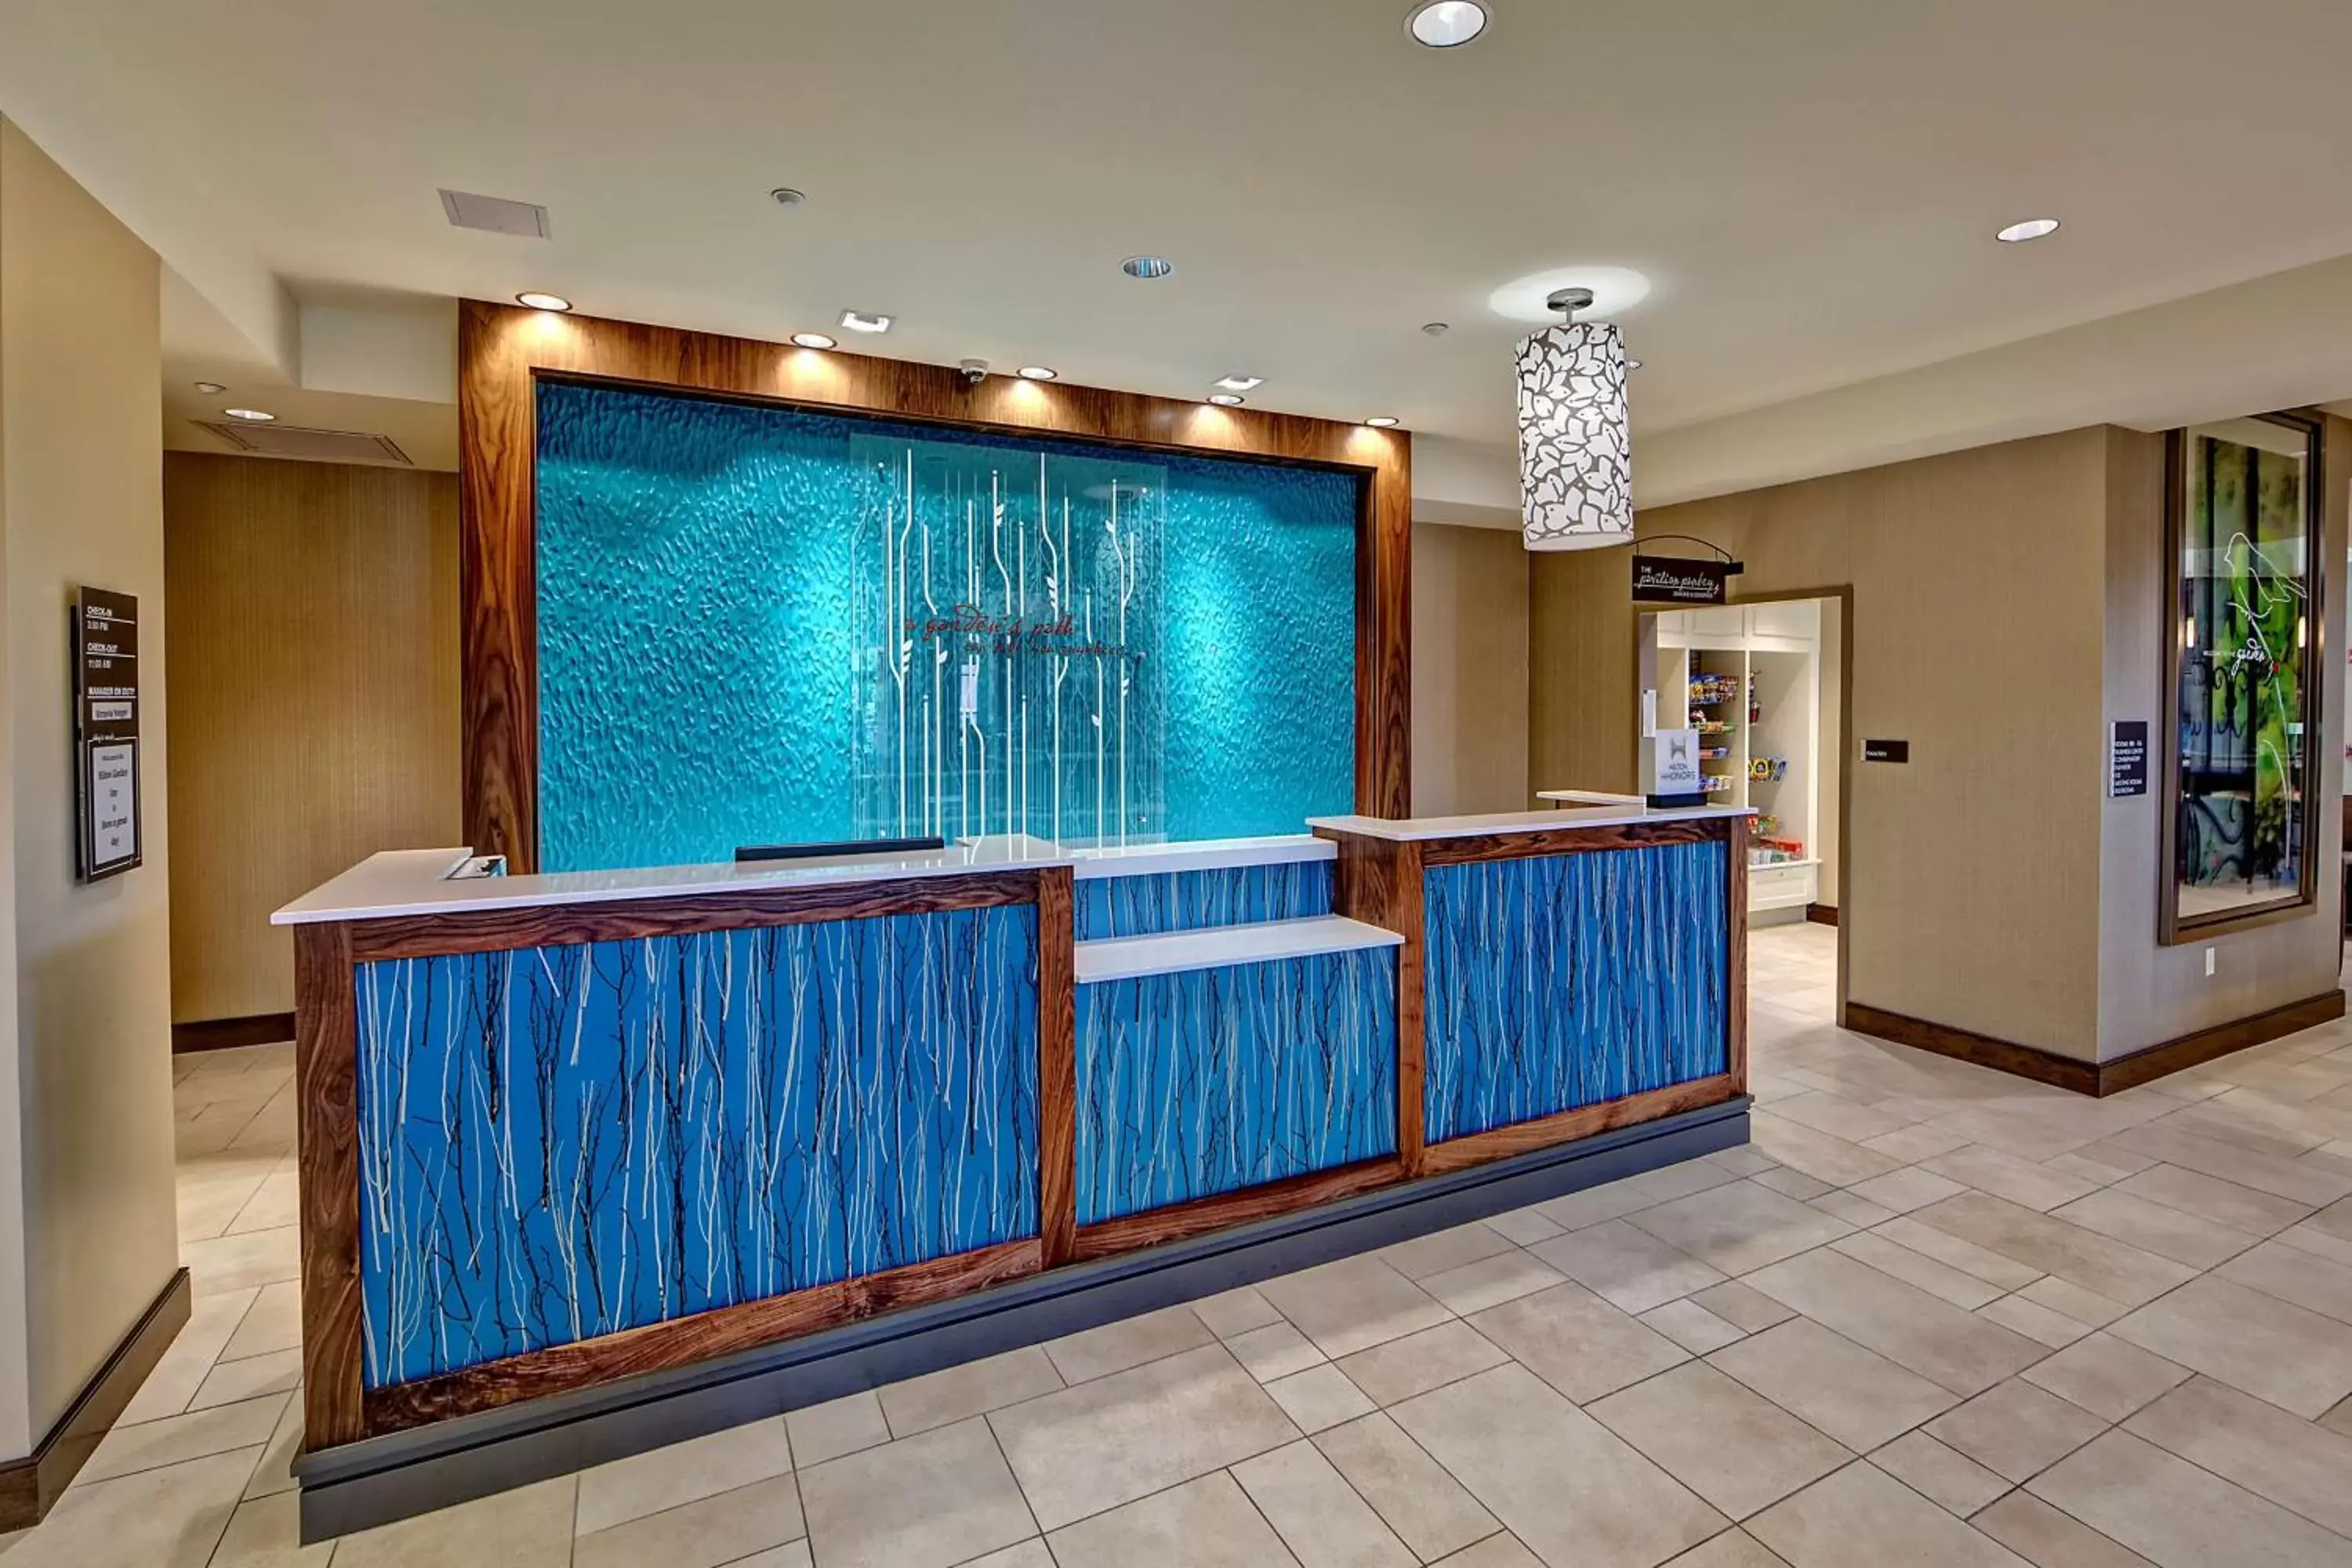 Lobby or reception, Lobby/Reception in Hilton Garden Inn Charleston / Mt. Pleasant